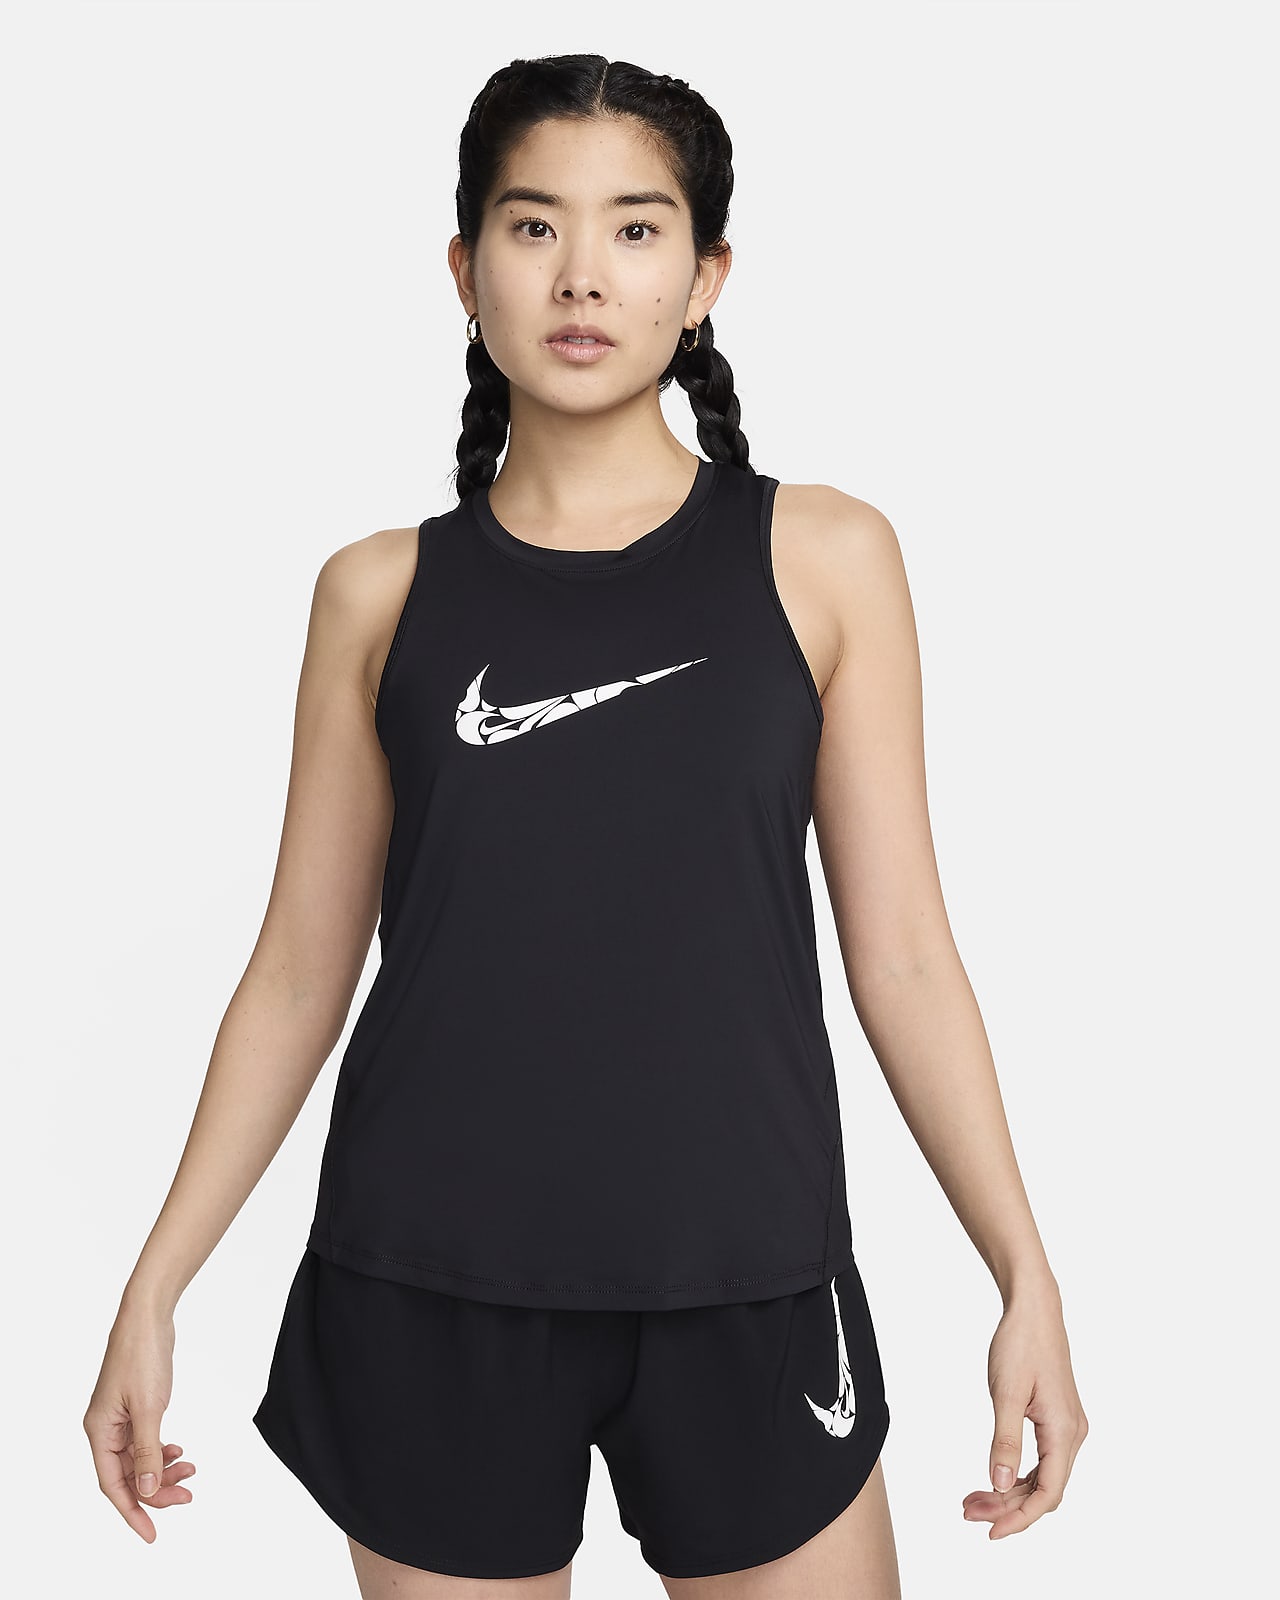 Nike One 女款圖樣跑步背心上衣